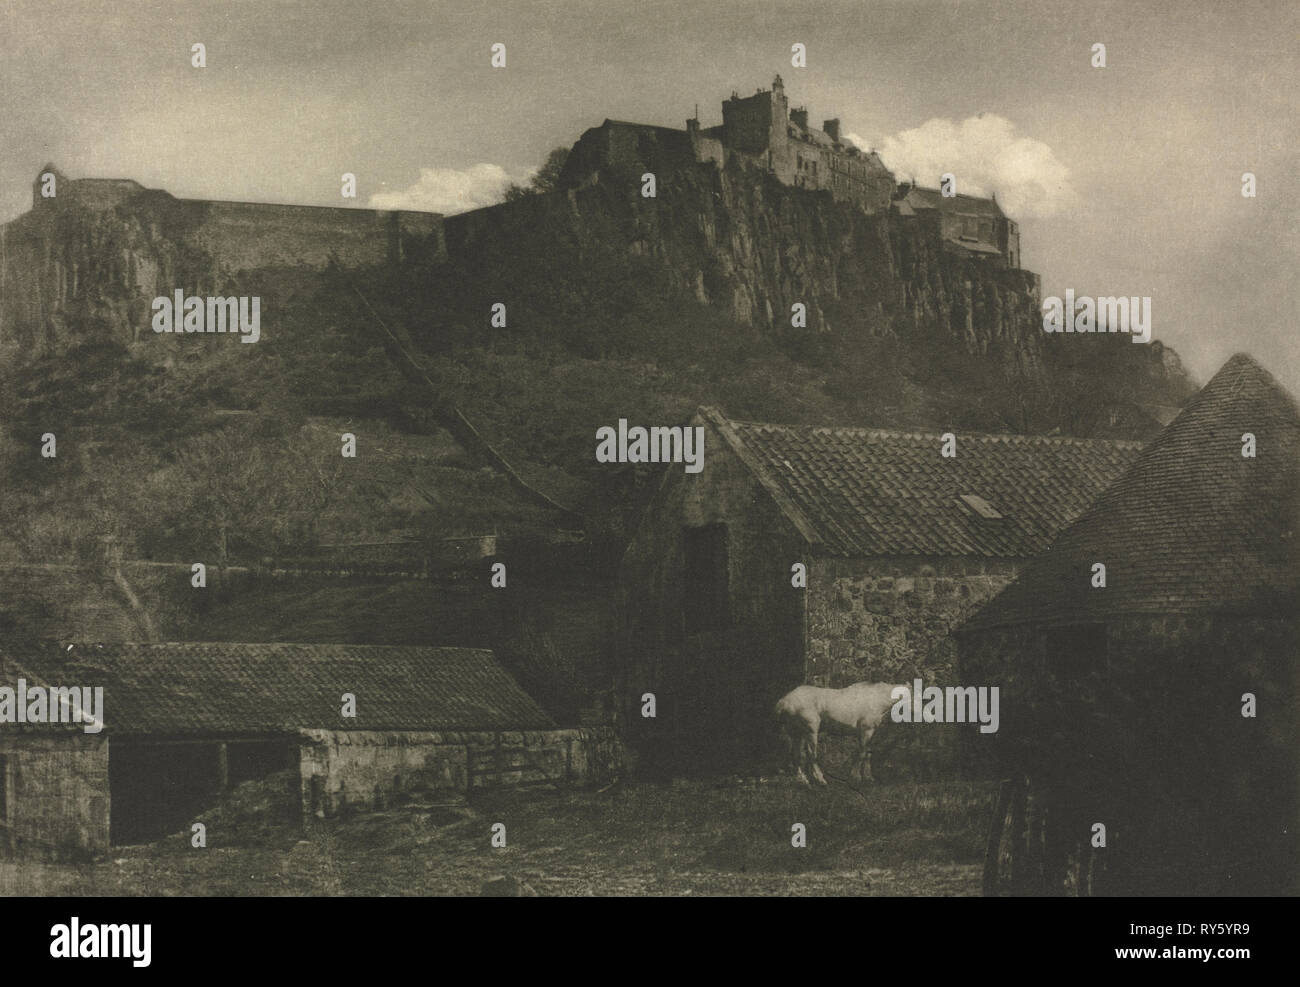 Le travail de l'appareil photo : le château de Stirling, 1907. J. Craig Annan (britannique, 1864-1946). Photogravure Banque D'Images